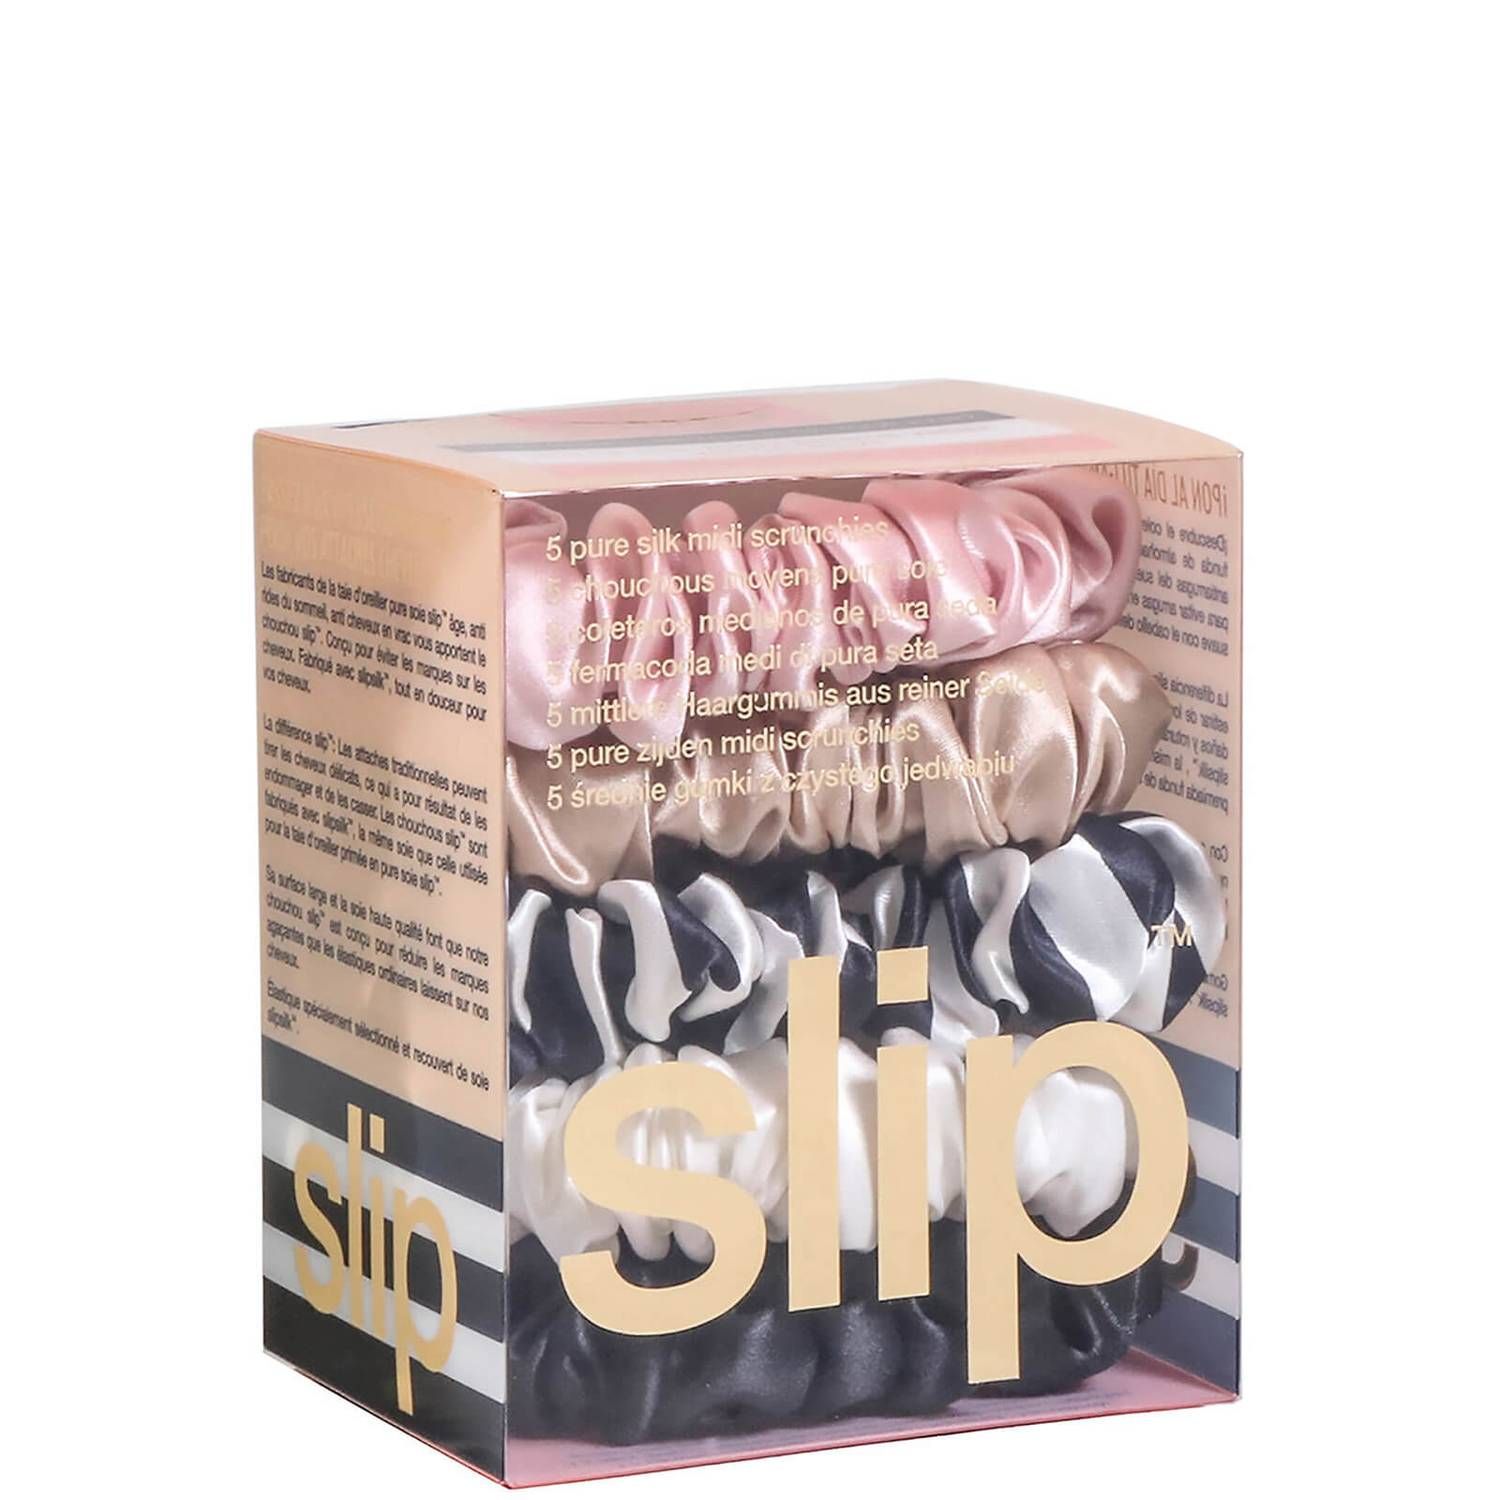 Slip Pure Silk 5-Pack Midi Scrunchies - Multi (5 piece) | Dermstore